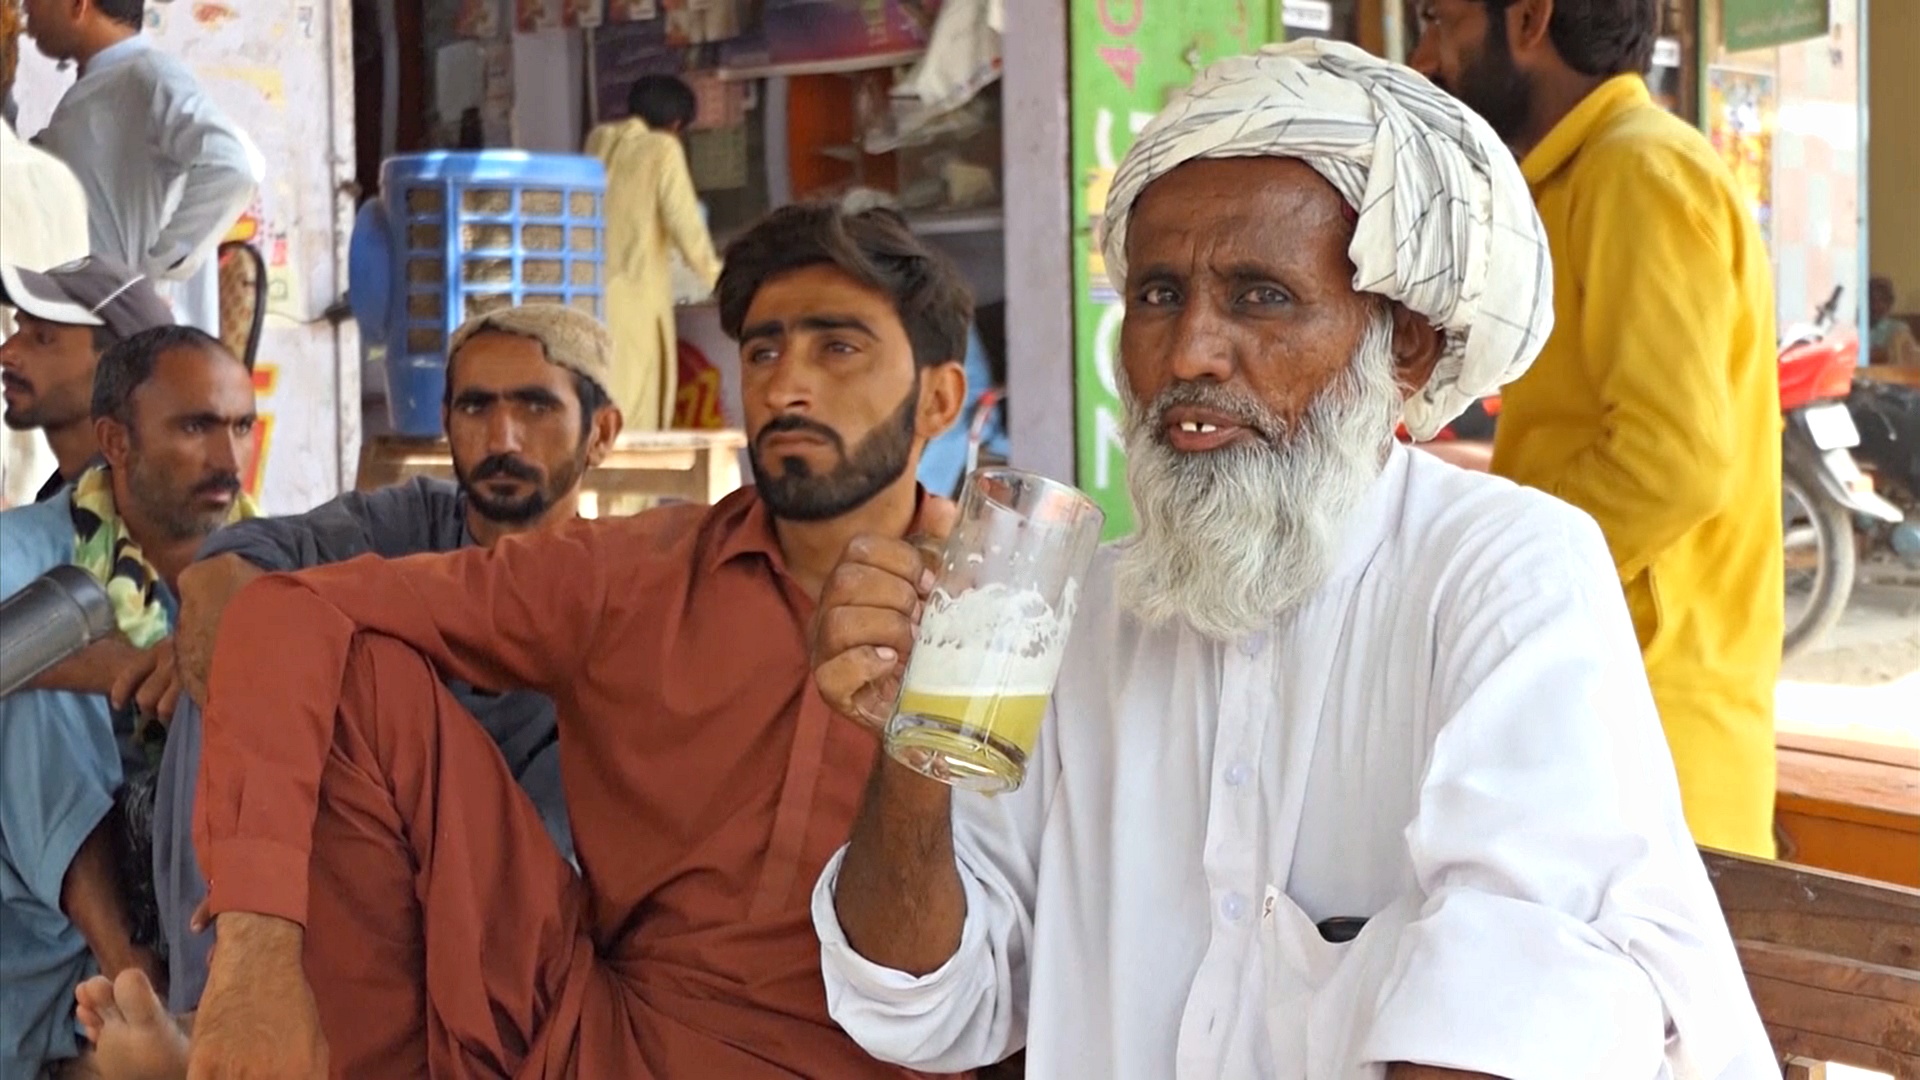 49 градусов: как выживают в Пакистане при адской жаре